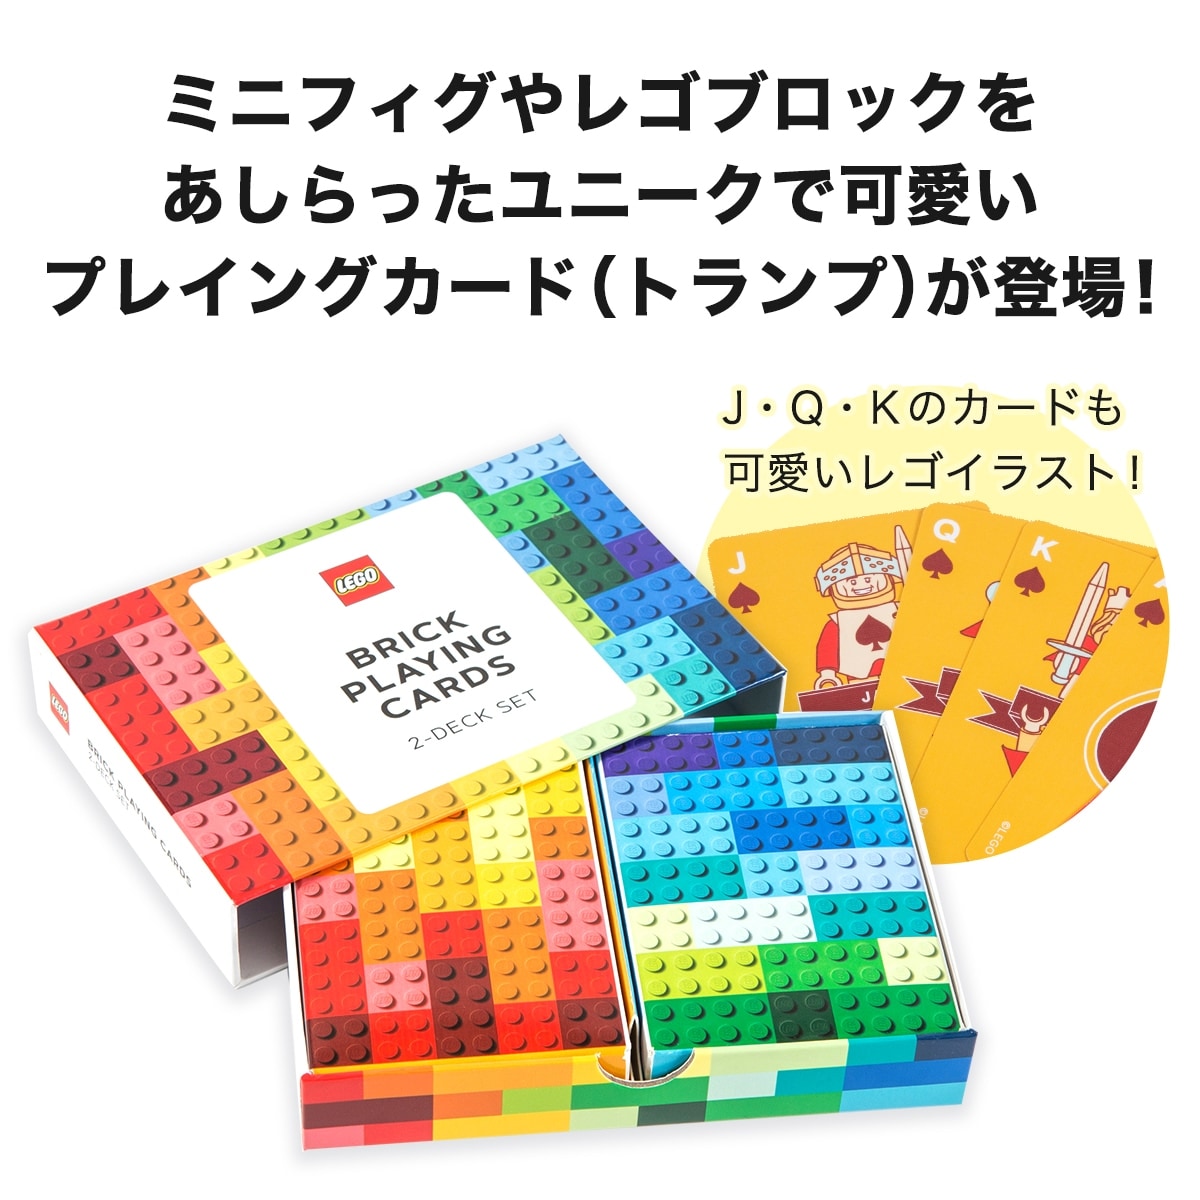 楽天市場 日本総輸入代理店 レゴ 174 ブリック プレイング カード Lego 174 Brick Playing Cards Cbpcg 001 雑貨 カード トランプ 子供 キッズ おしゃれ かわいい Bricks